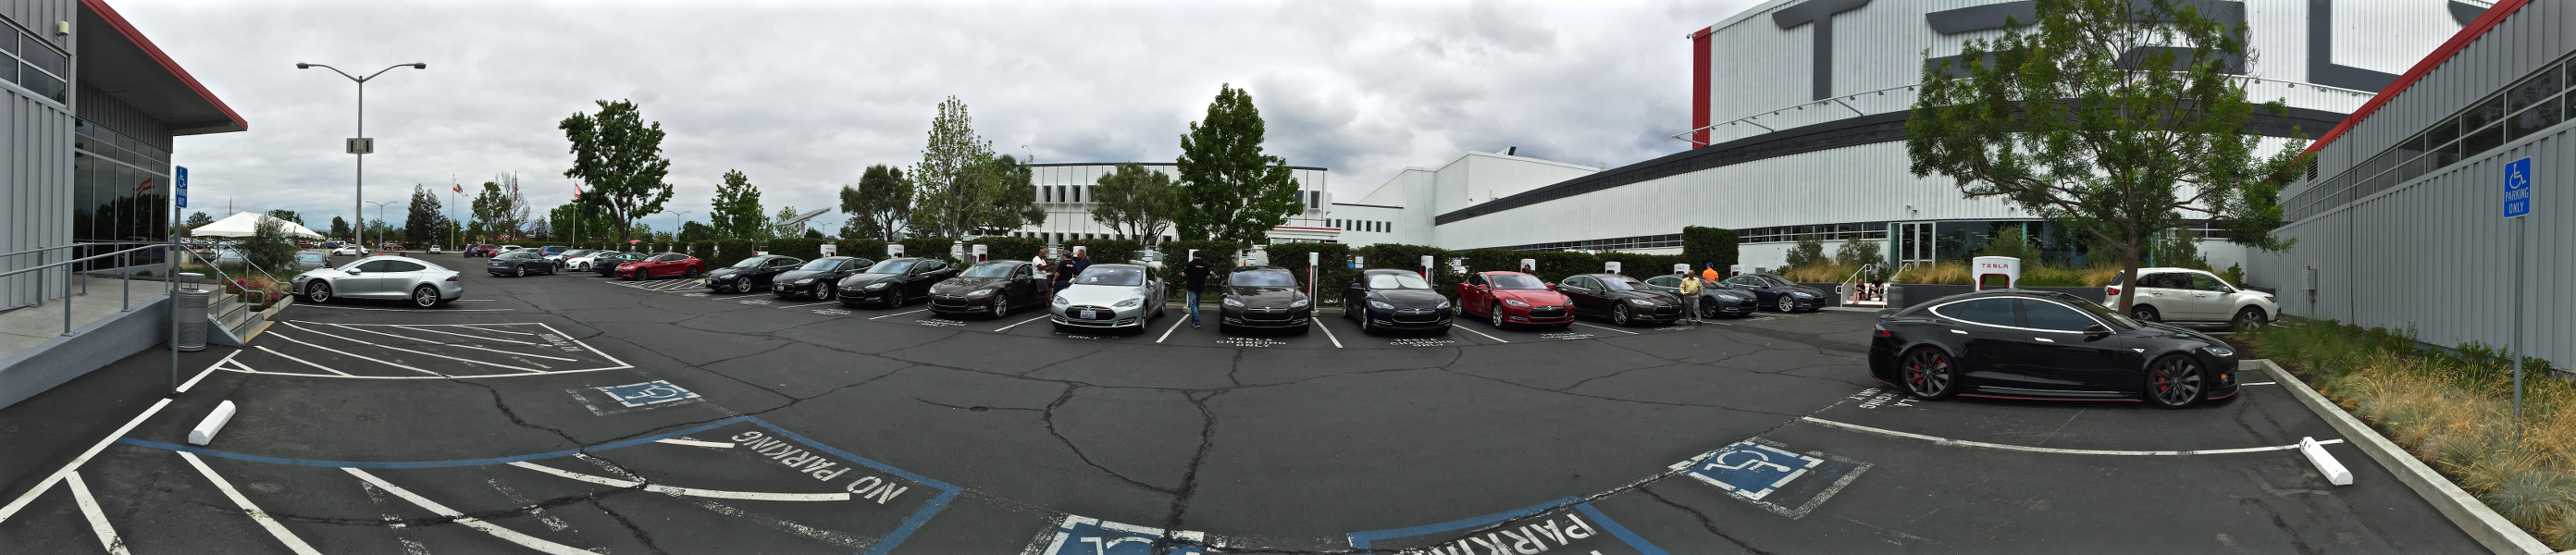 Tesla-Fremont-Supercharger-RevoZport